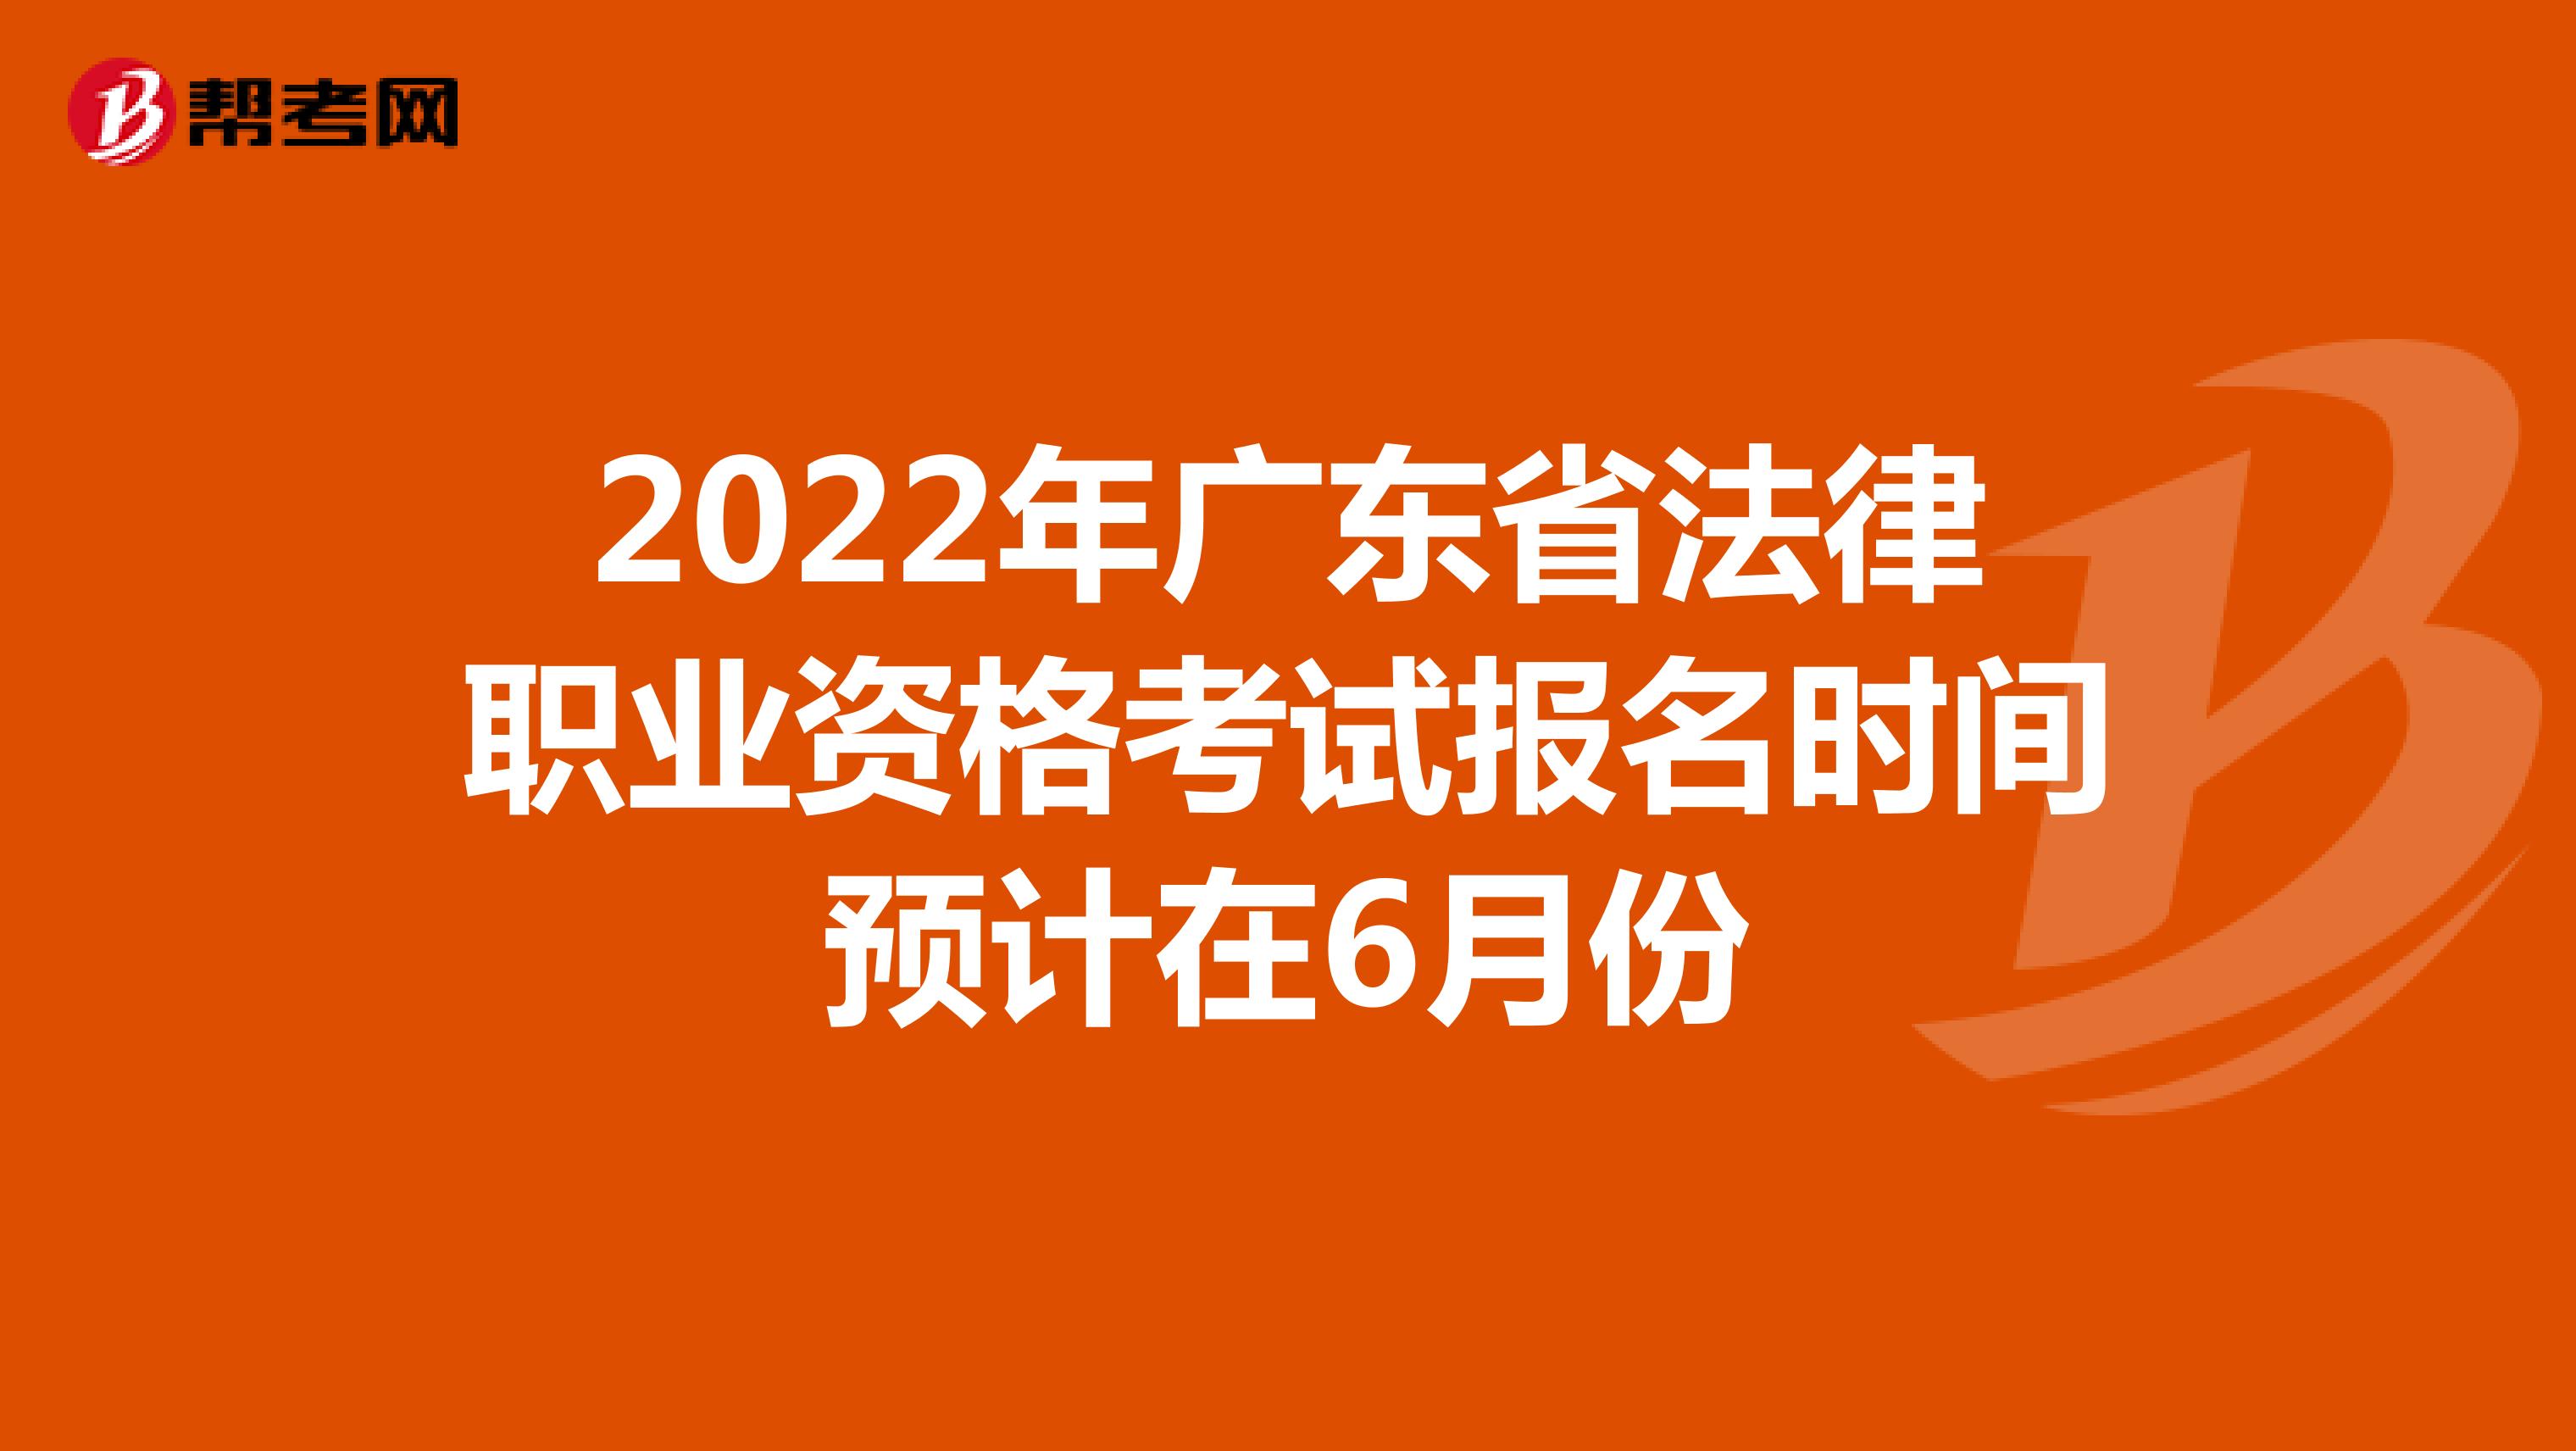 2022年广东省法律职业资格考试报名时间预计在6月份